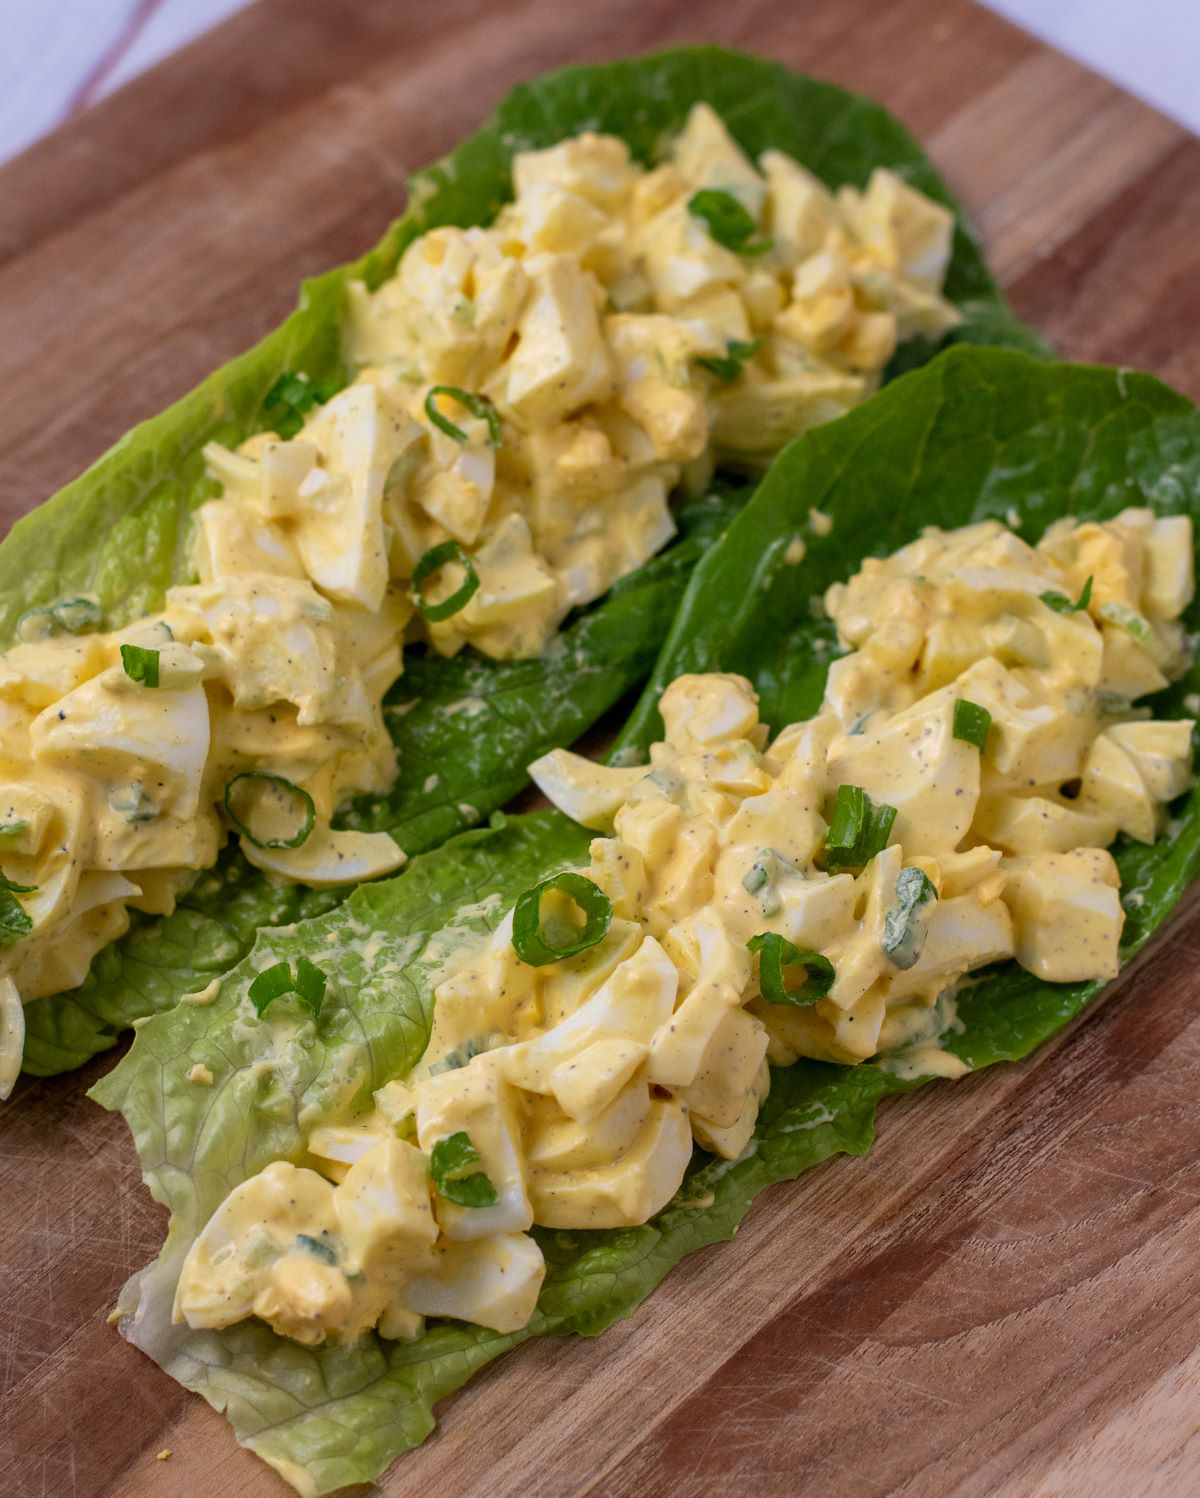 egg salad served in lettuce leaves